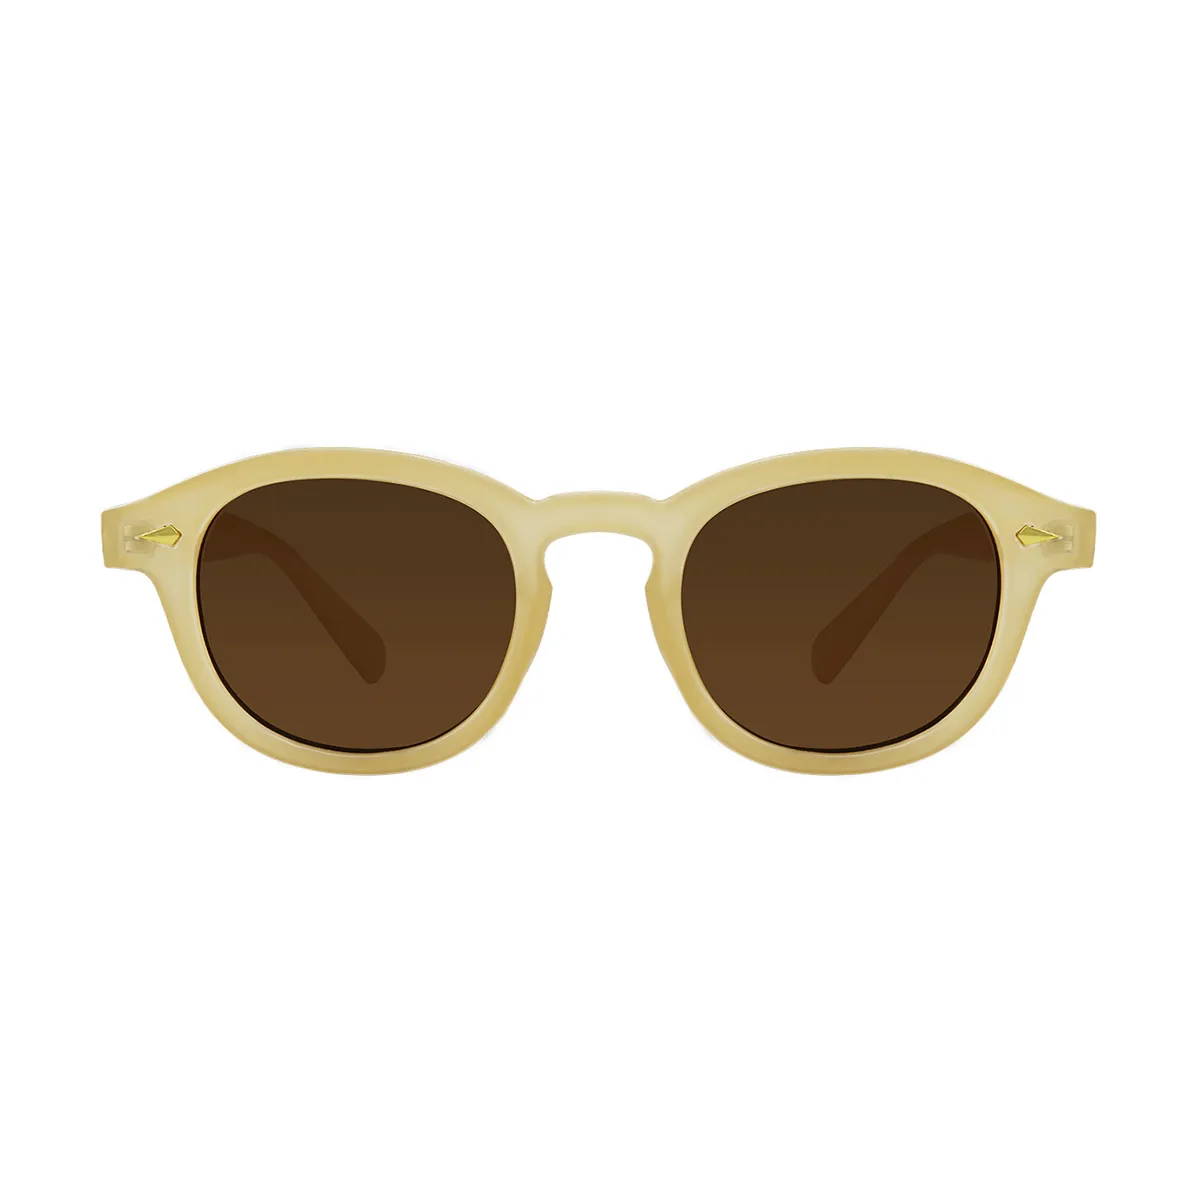 Neutral - glasses Off-white Sunglasses for Men & Women